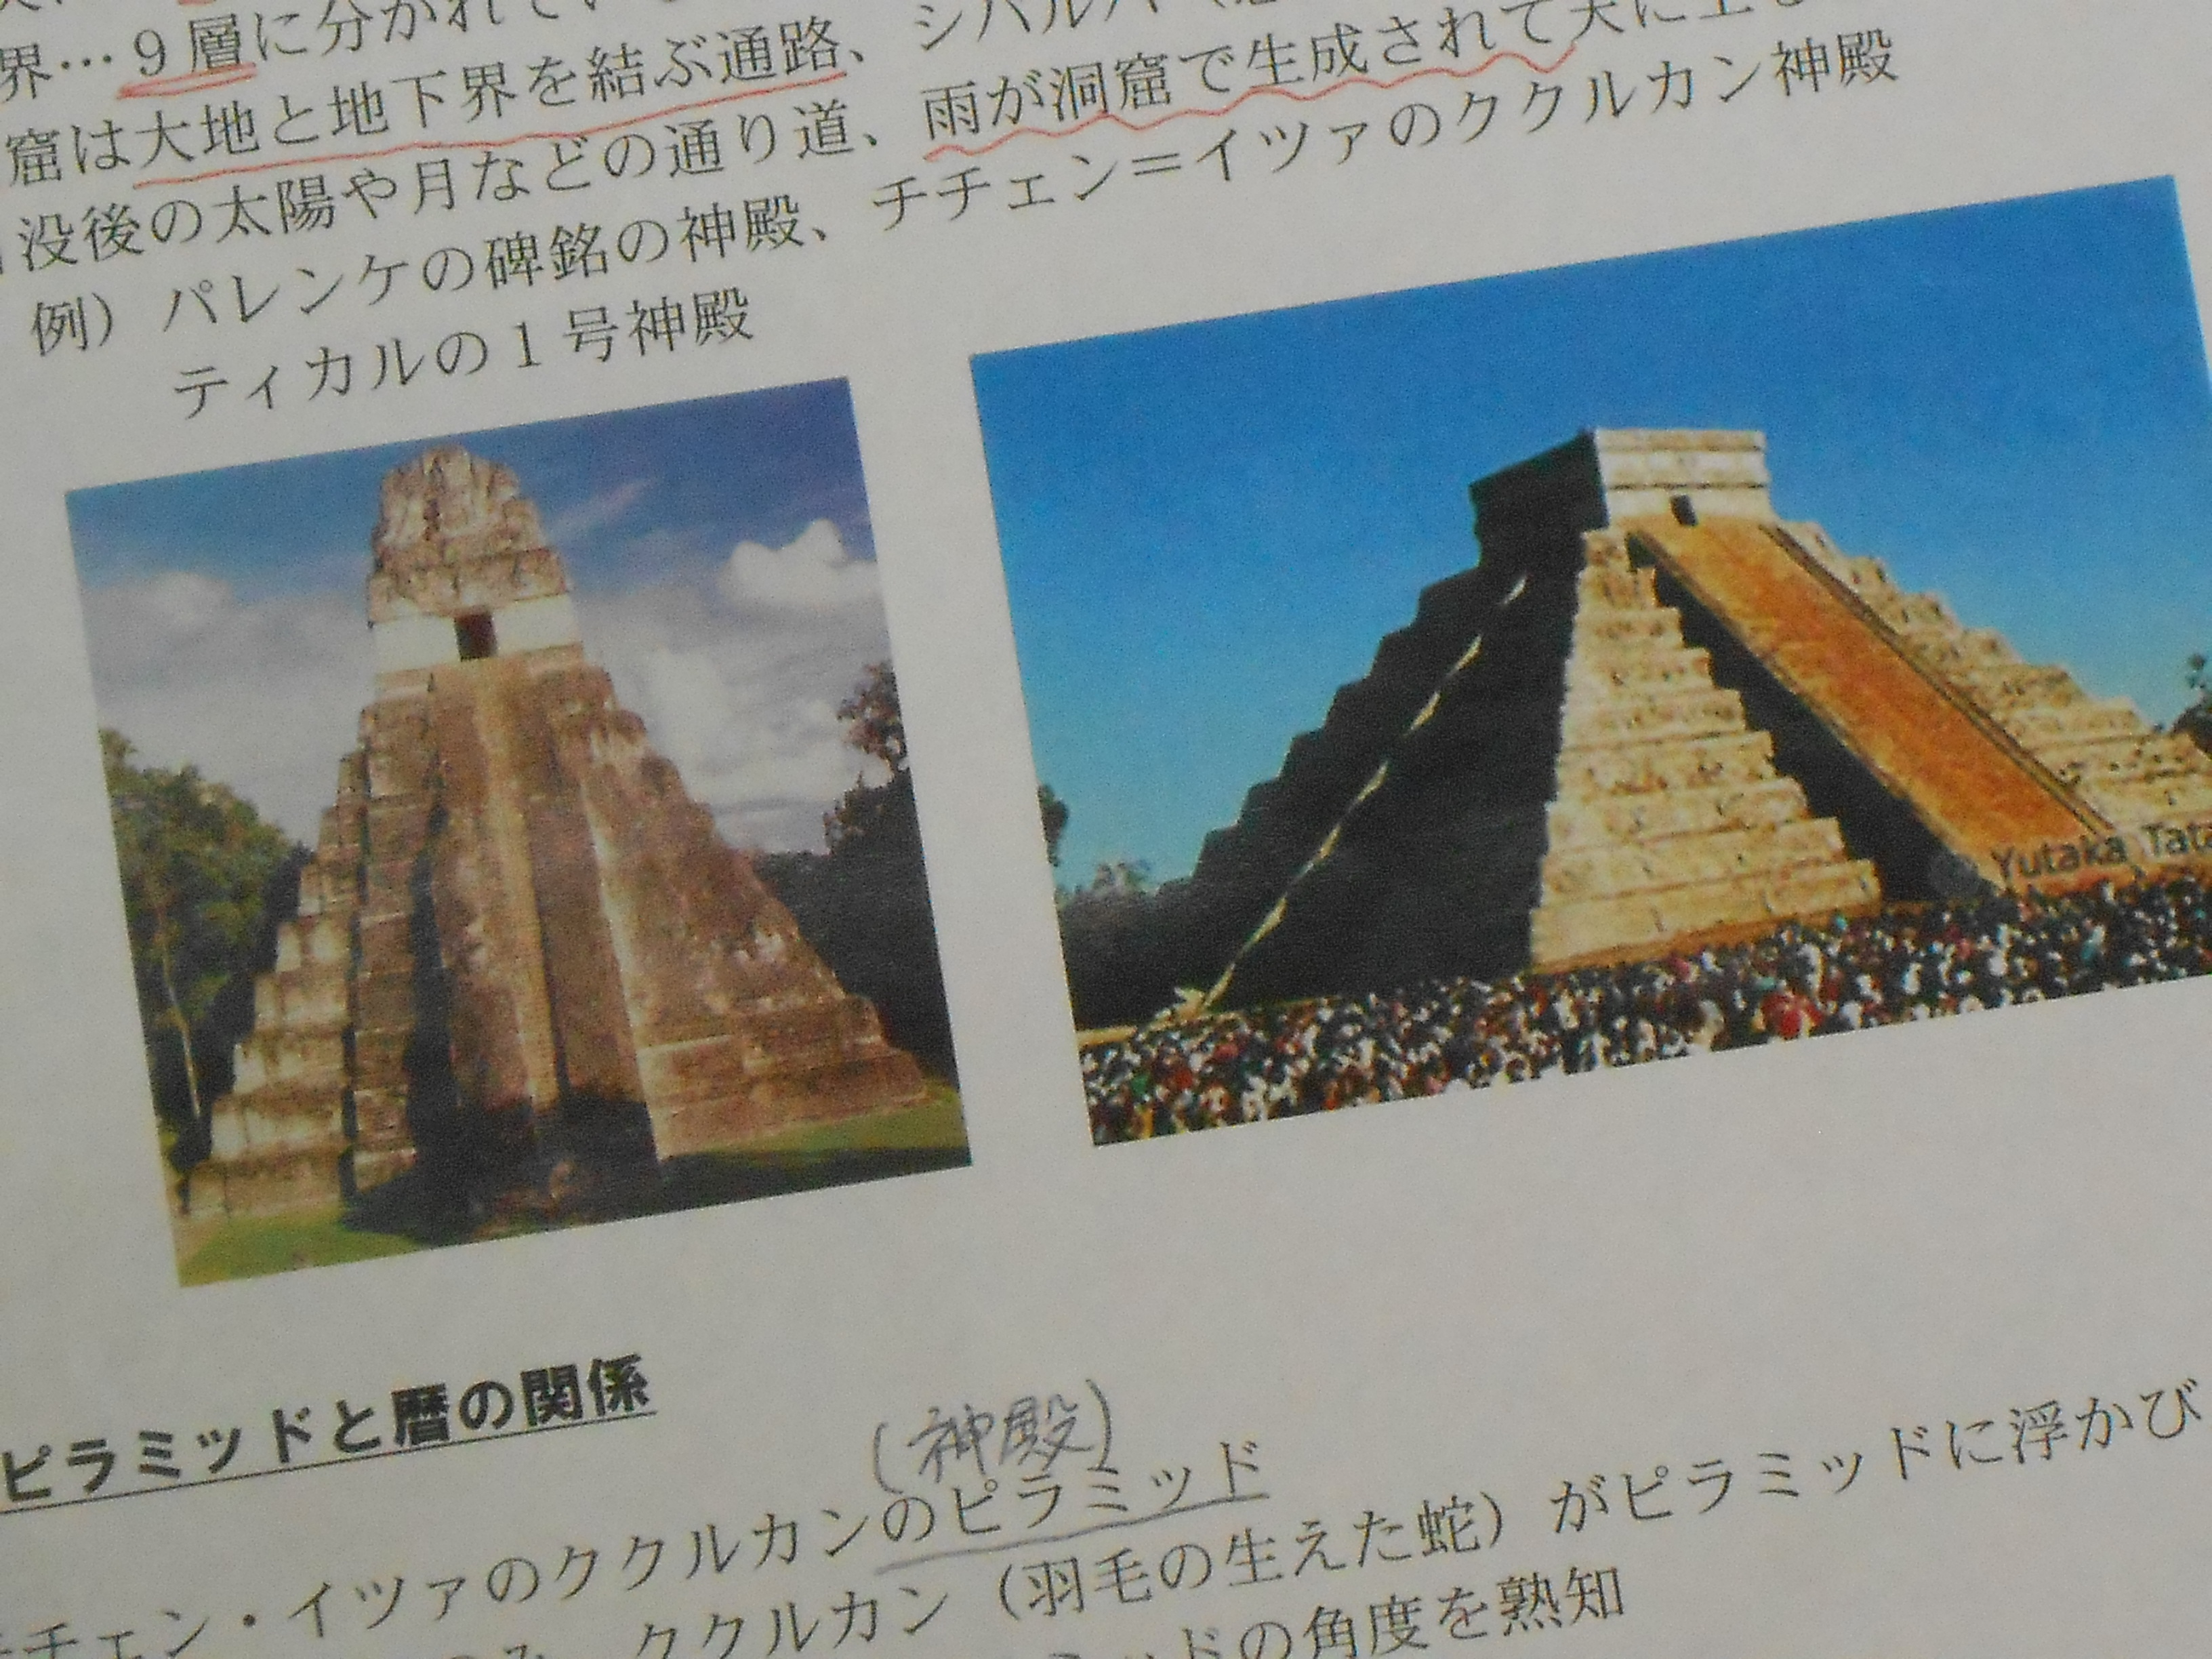 513 講演―マヤ文明のピラミッド | マヤ文明研究者 Yuの語り